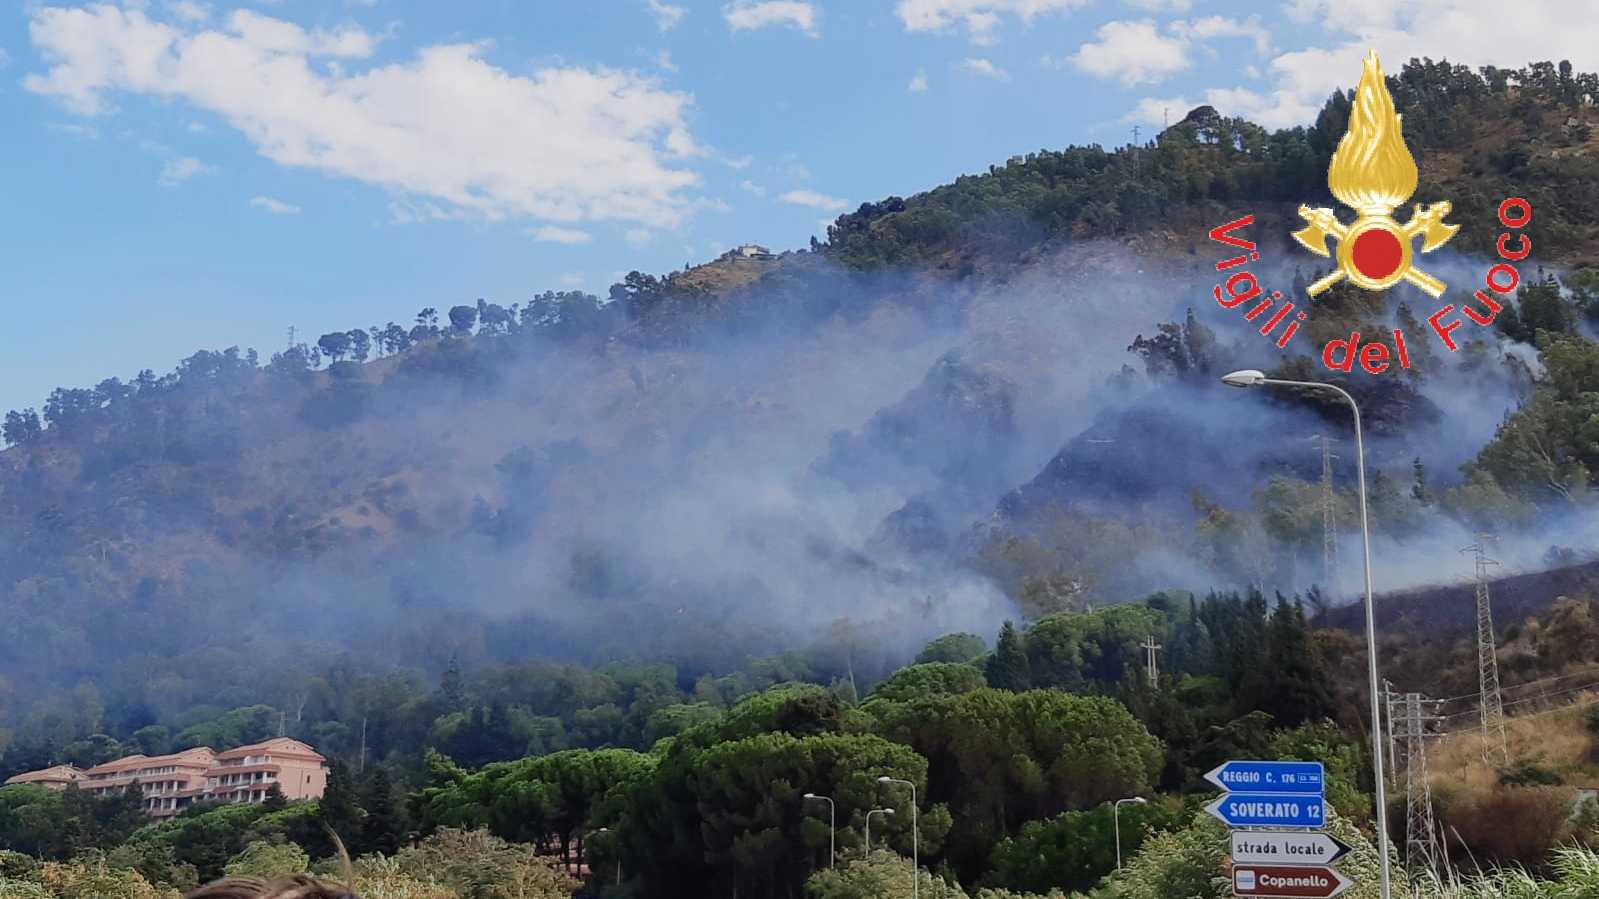 In fiamme le colline di copanello evacuate le abitazioni in azione i VVF